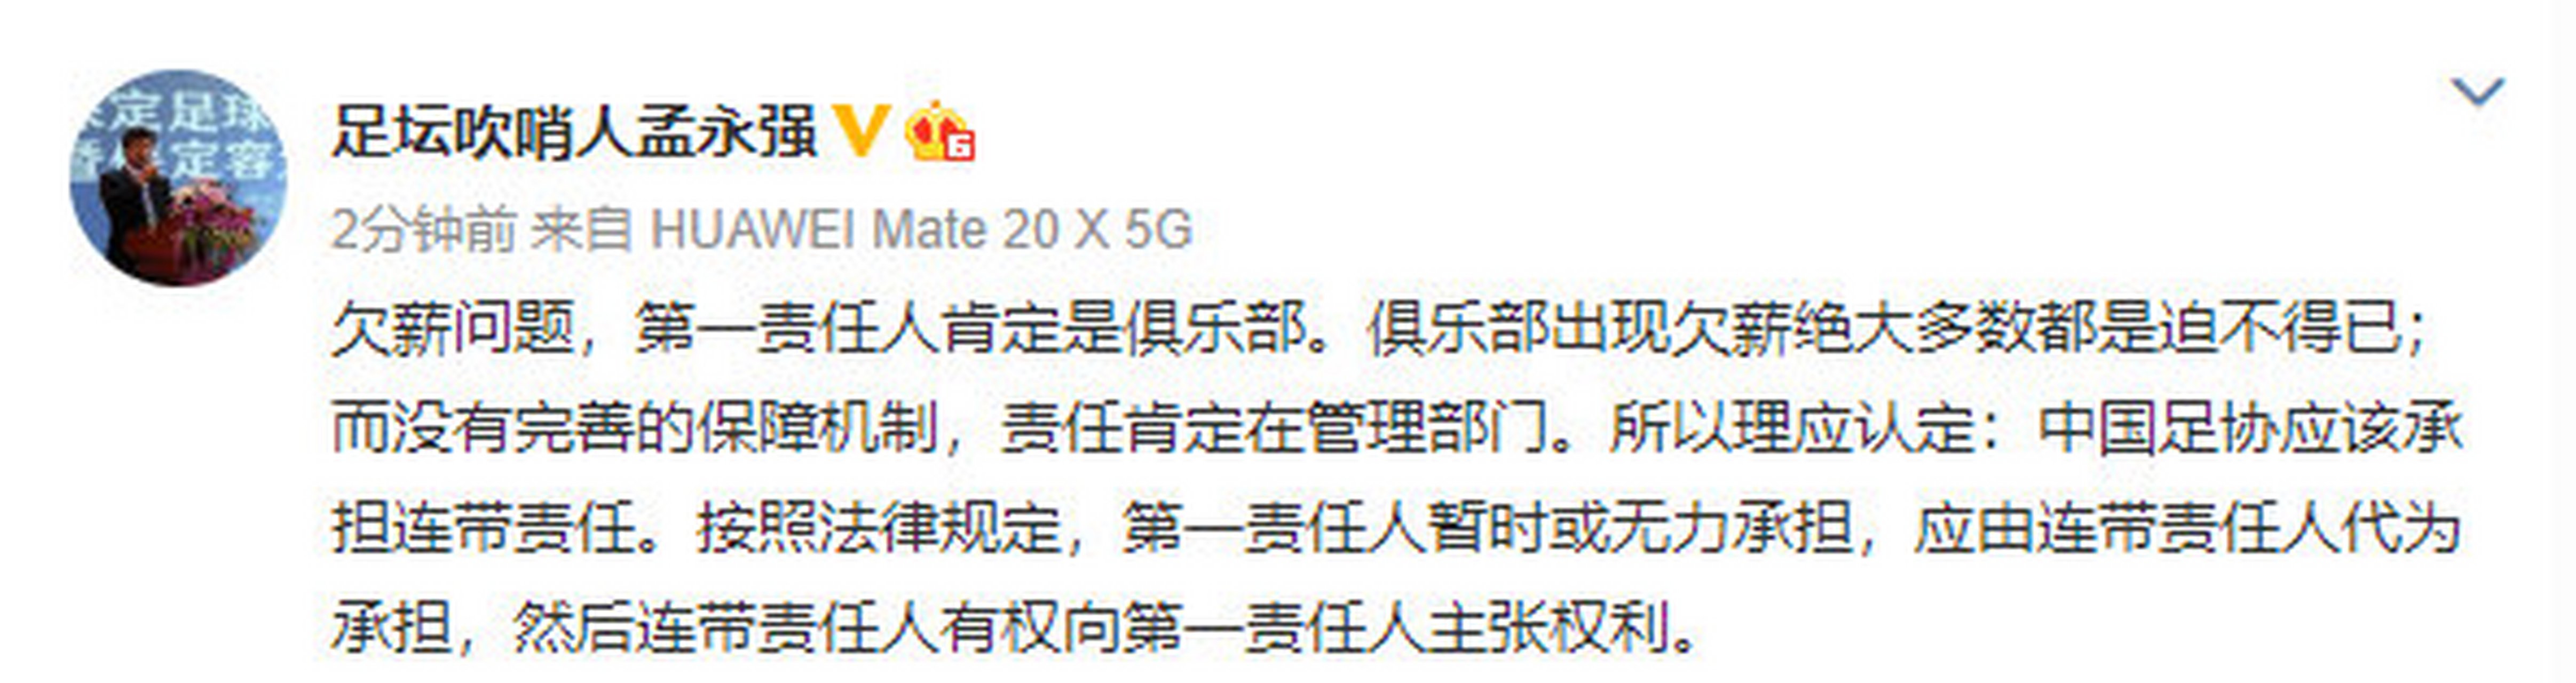 今天,容大俱乐部董事长孟永强也在微博谈到了欠薪问题